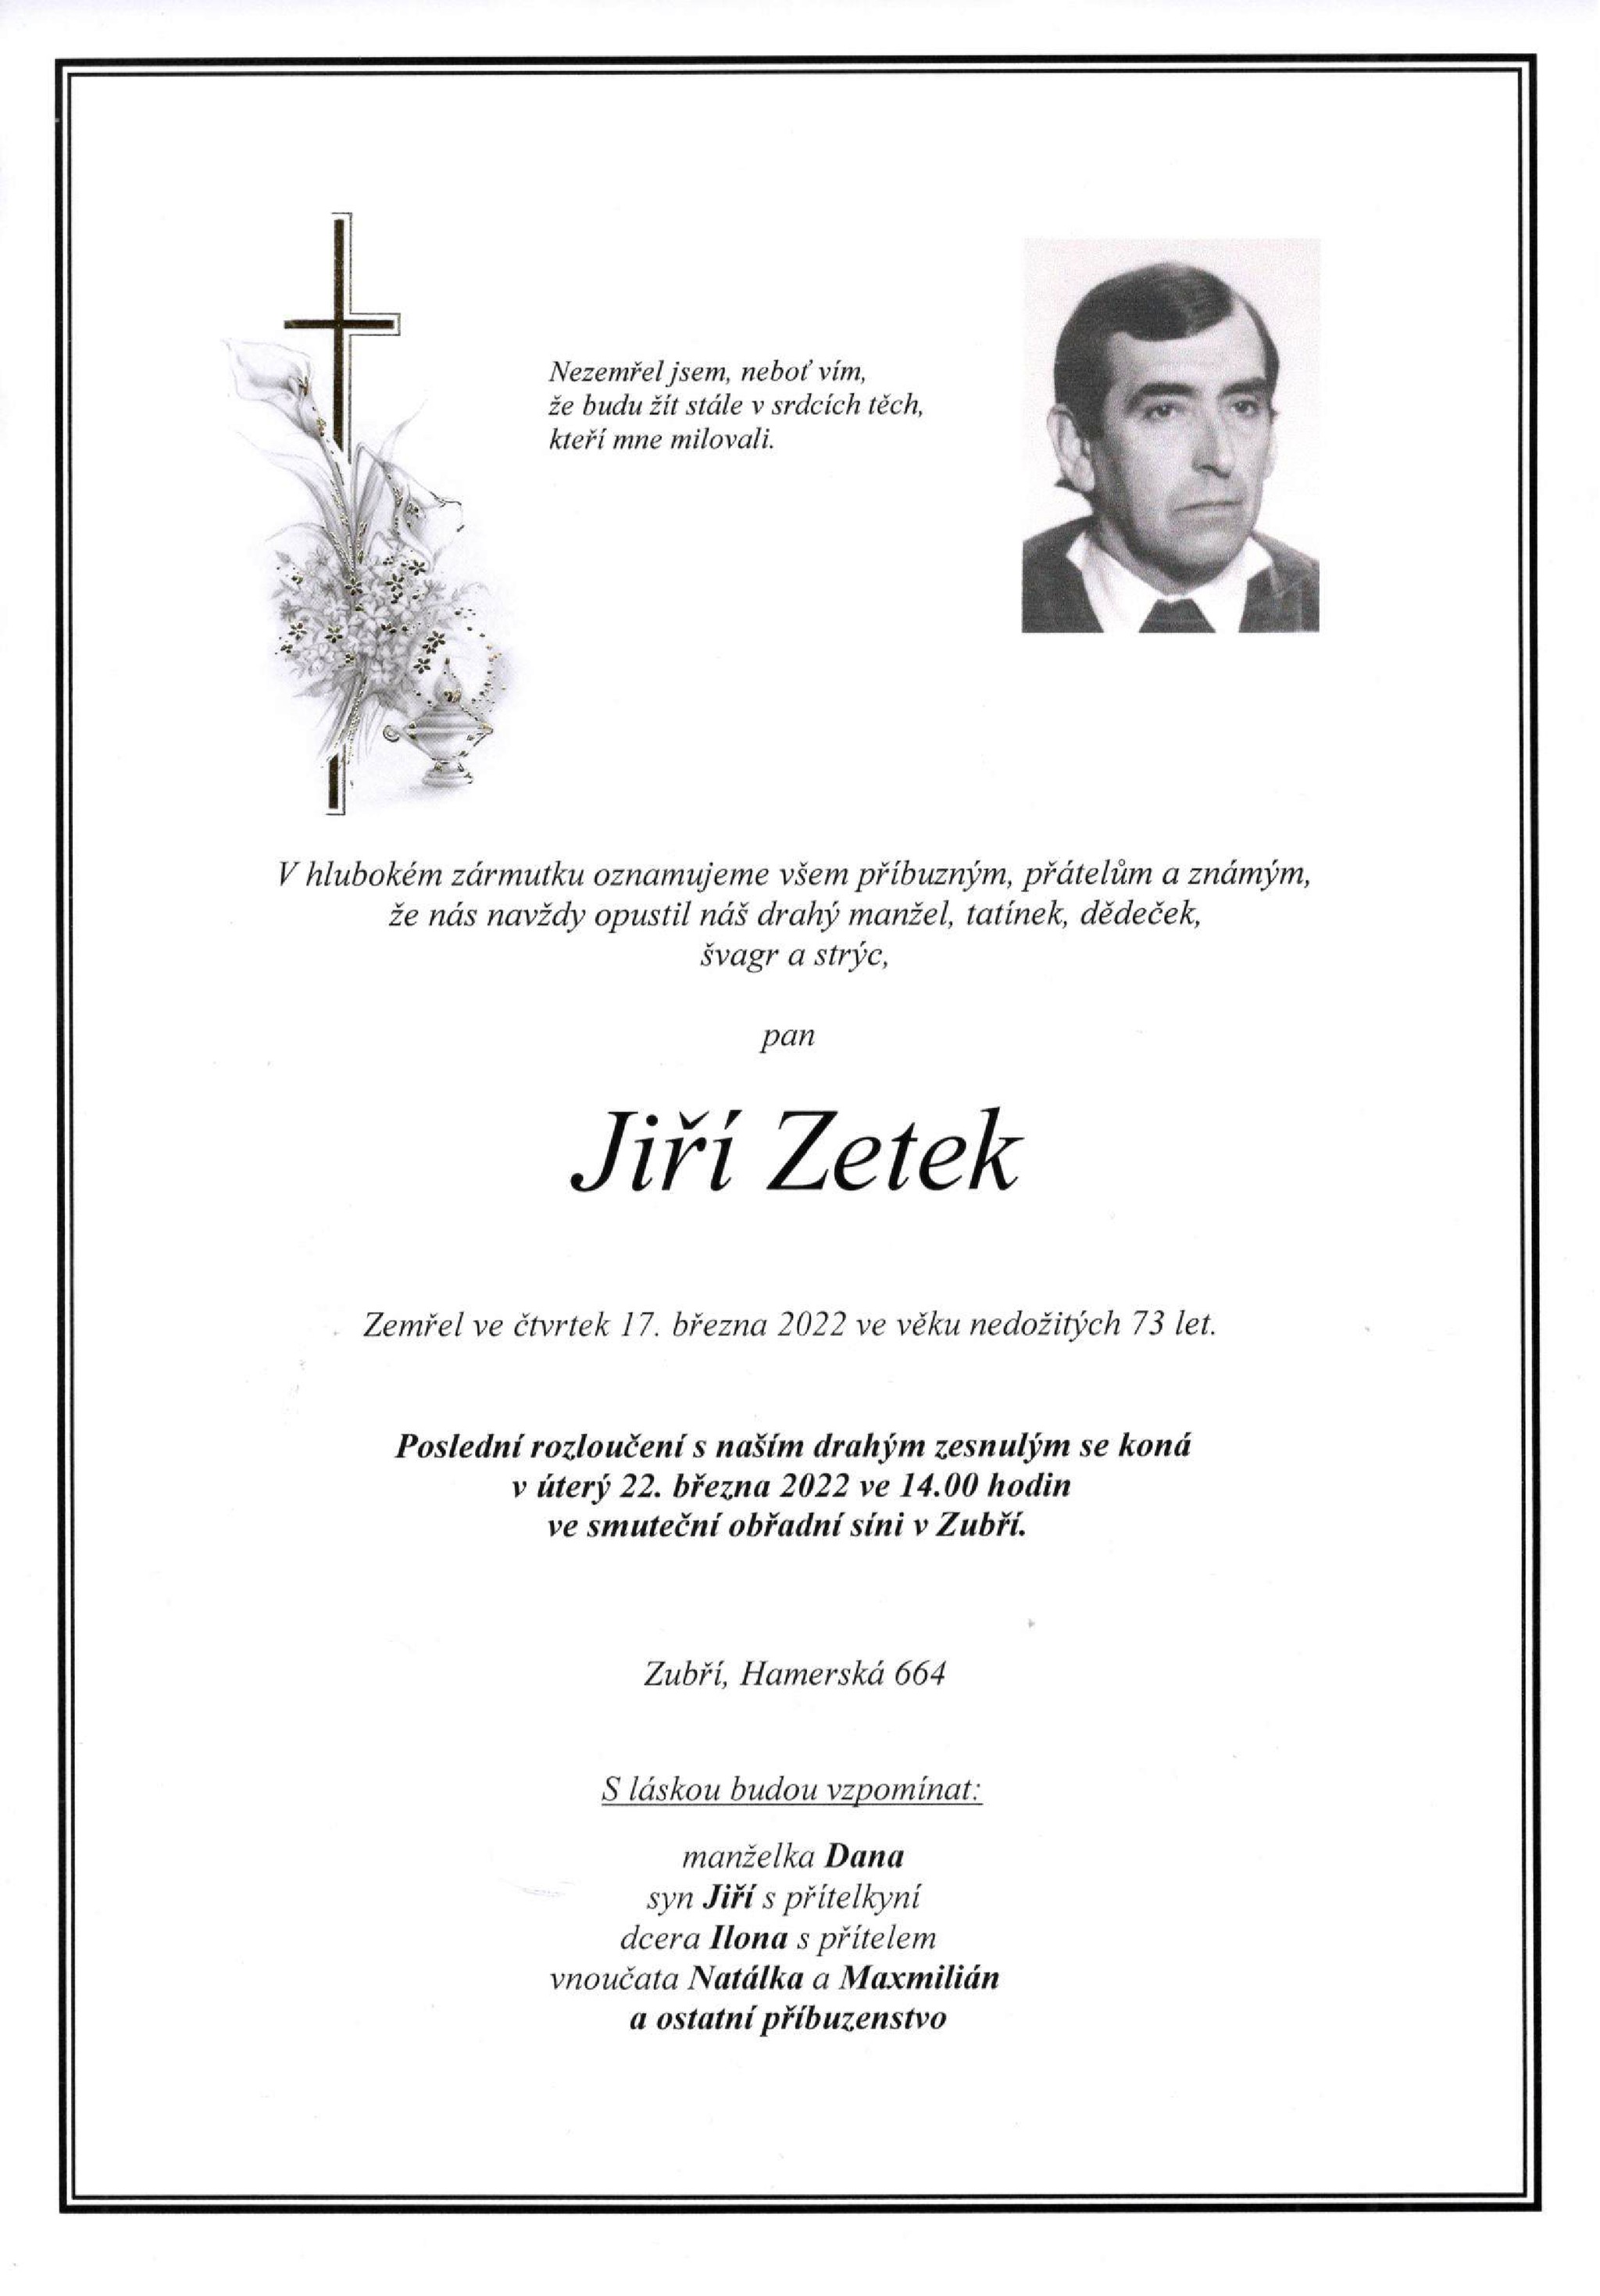 Jiří Zetek